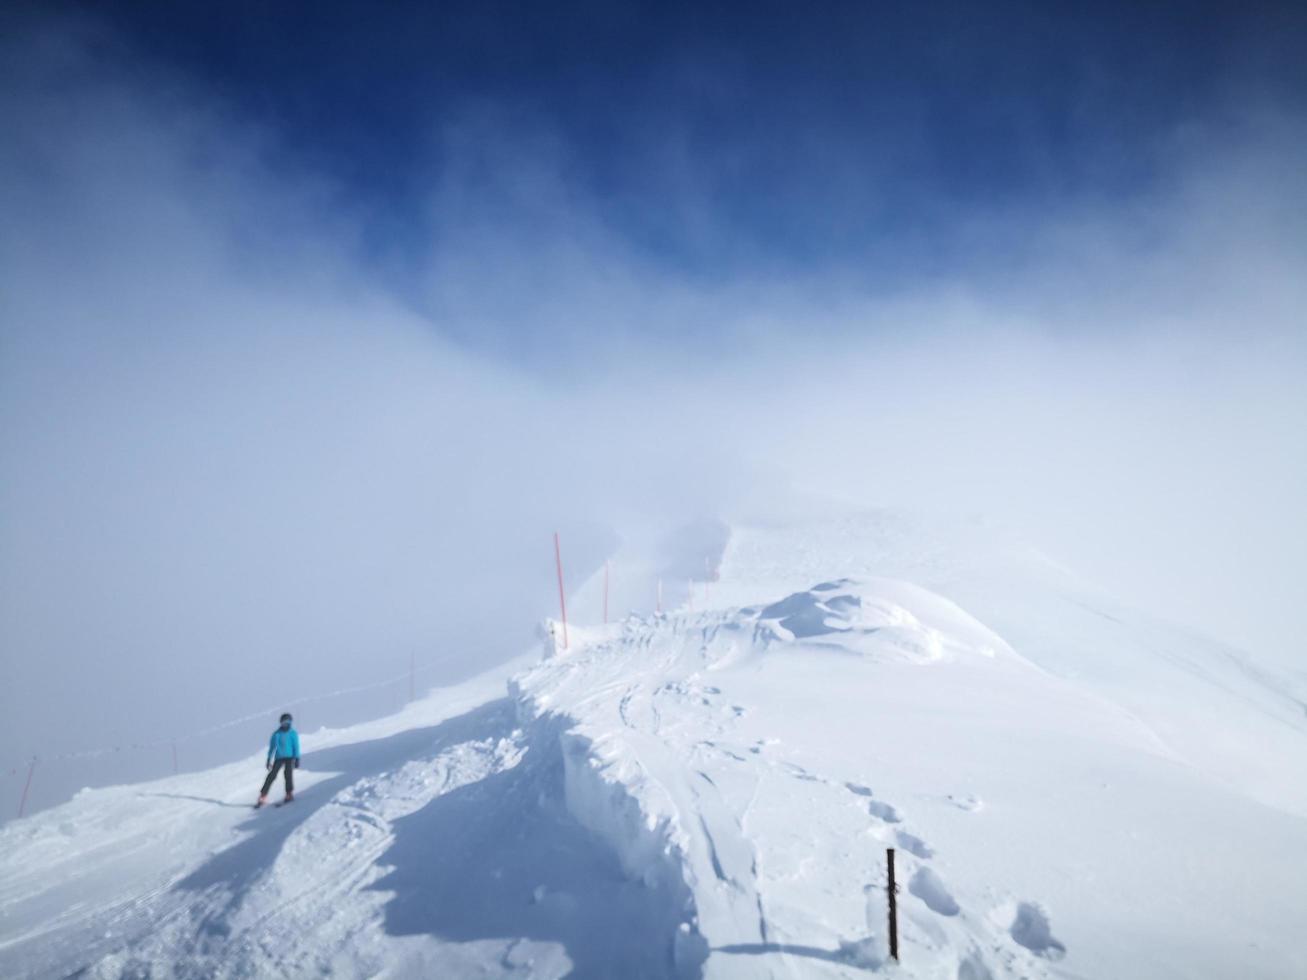 esquiar através de uma tempestade de neve na montanha foto